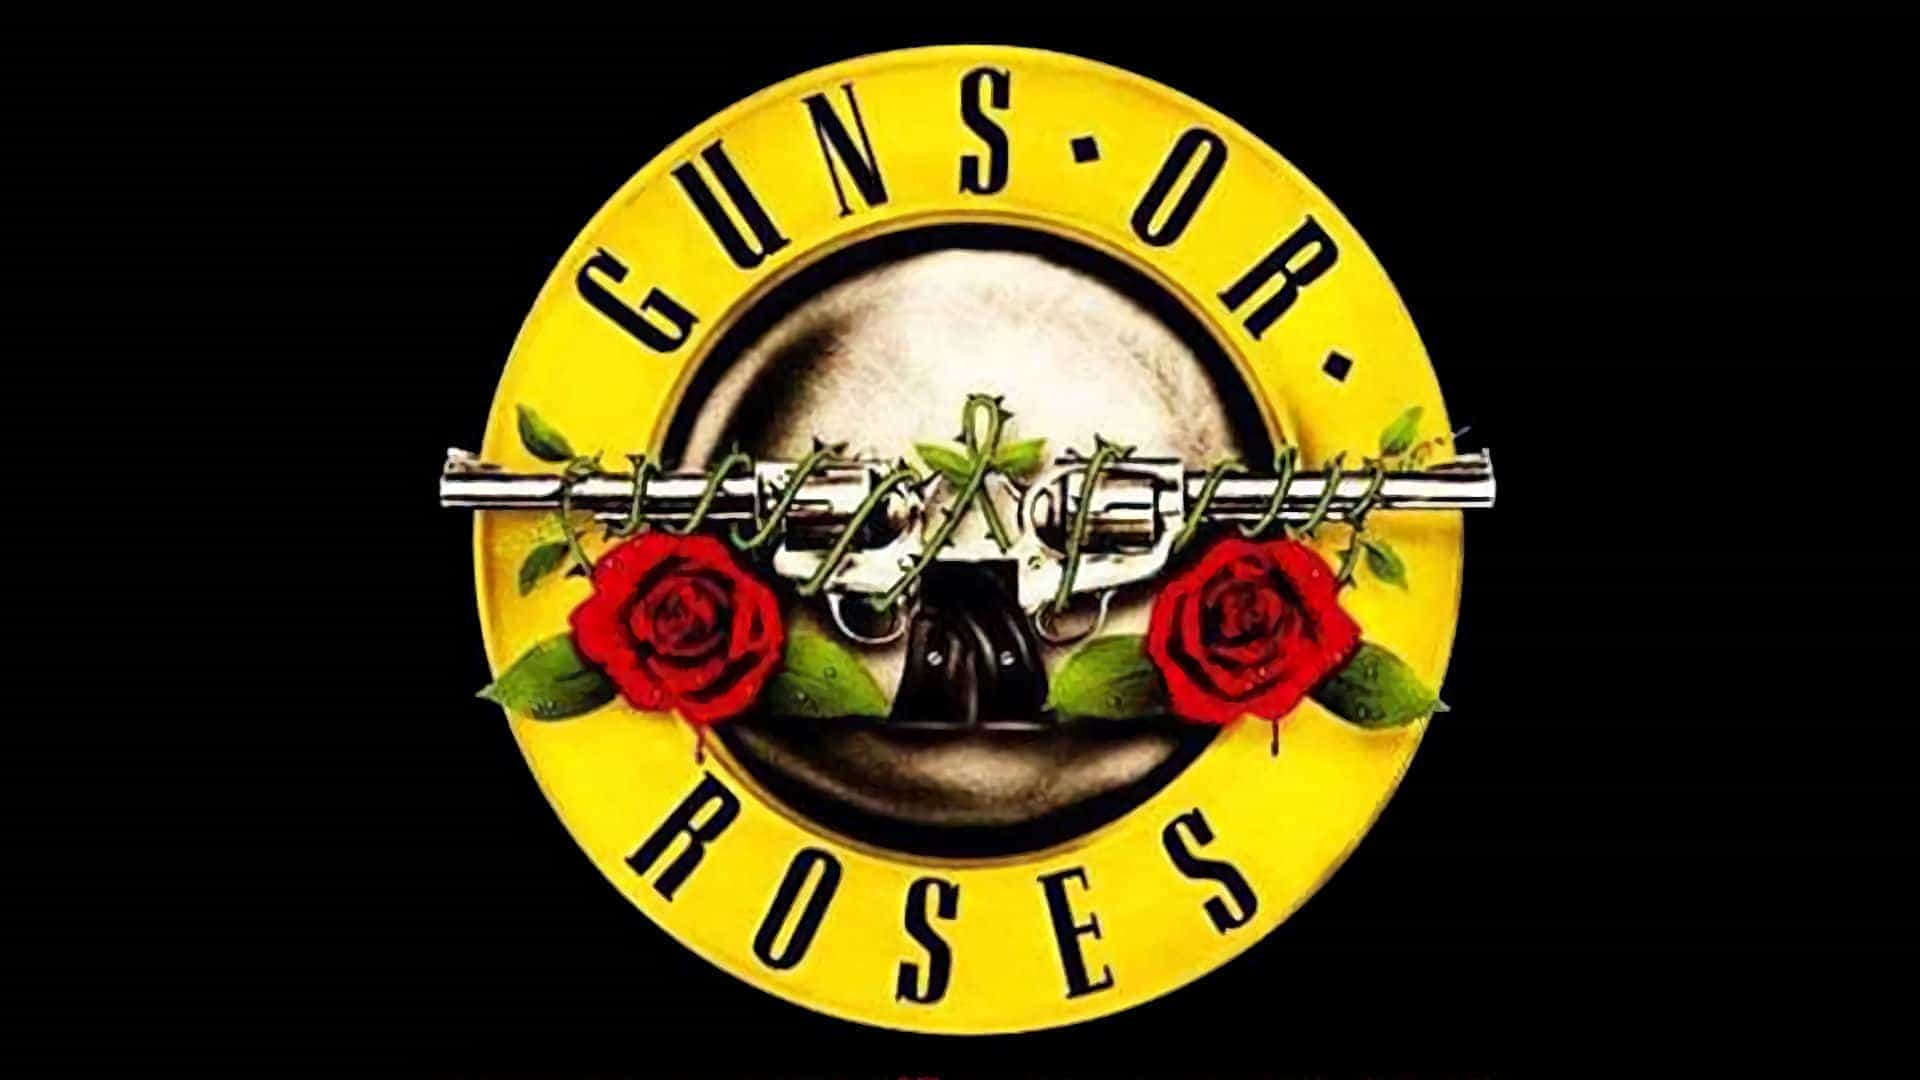 Guns or Roses - Tribute to Guns n' Roses